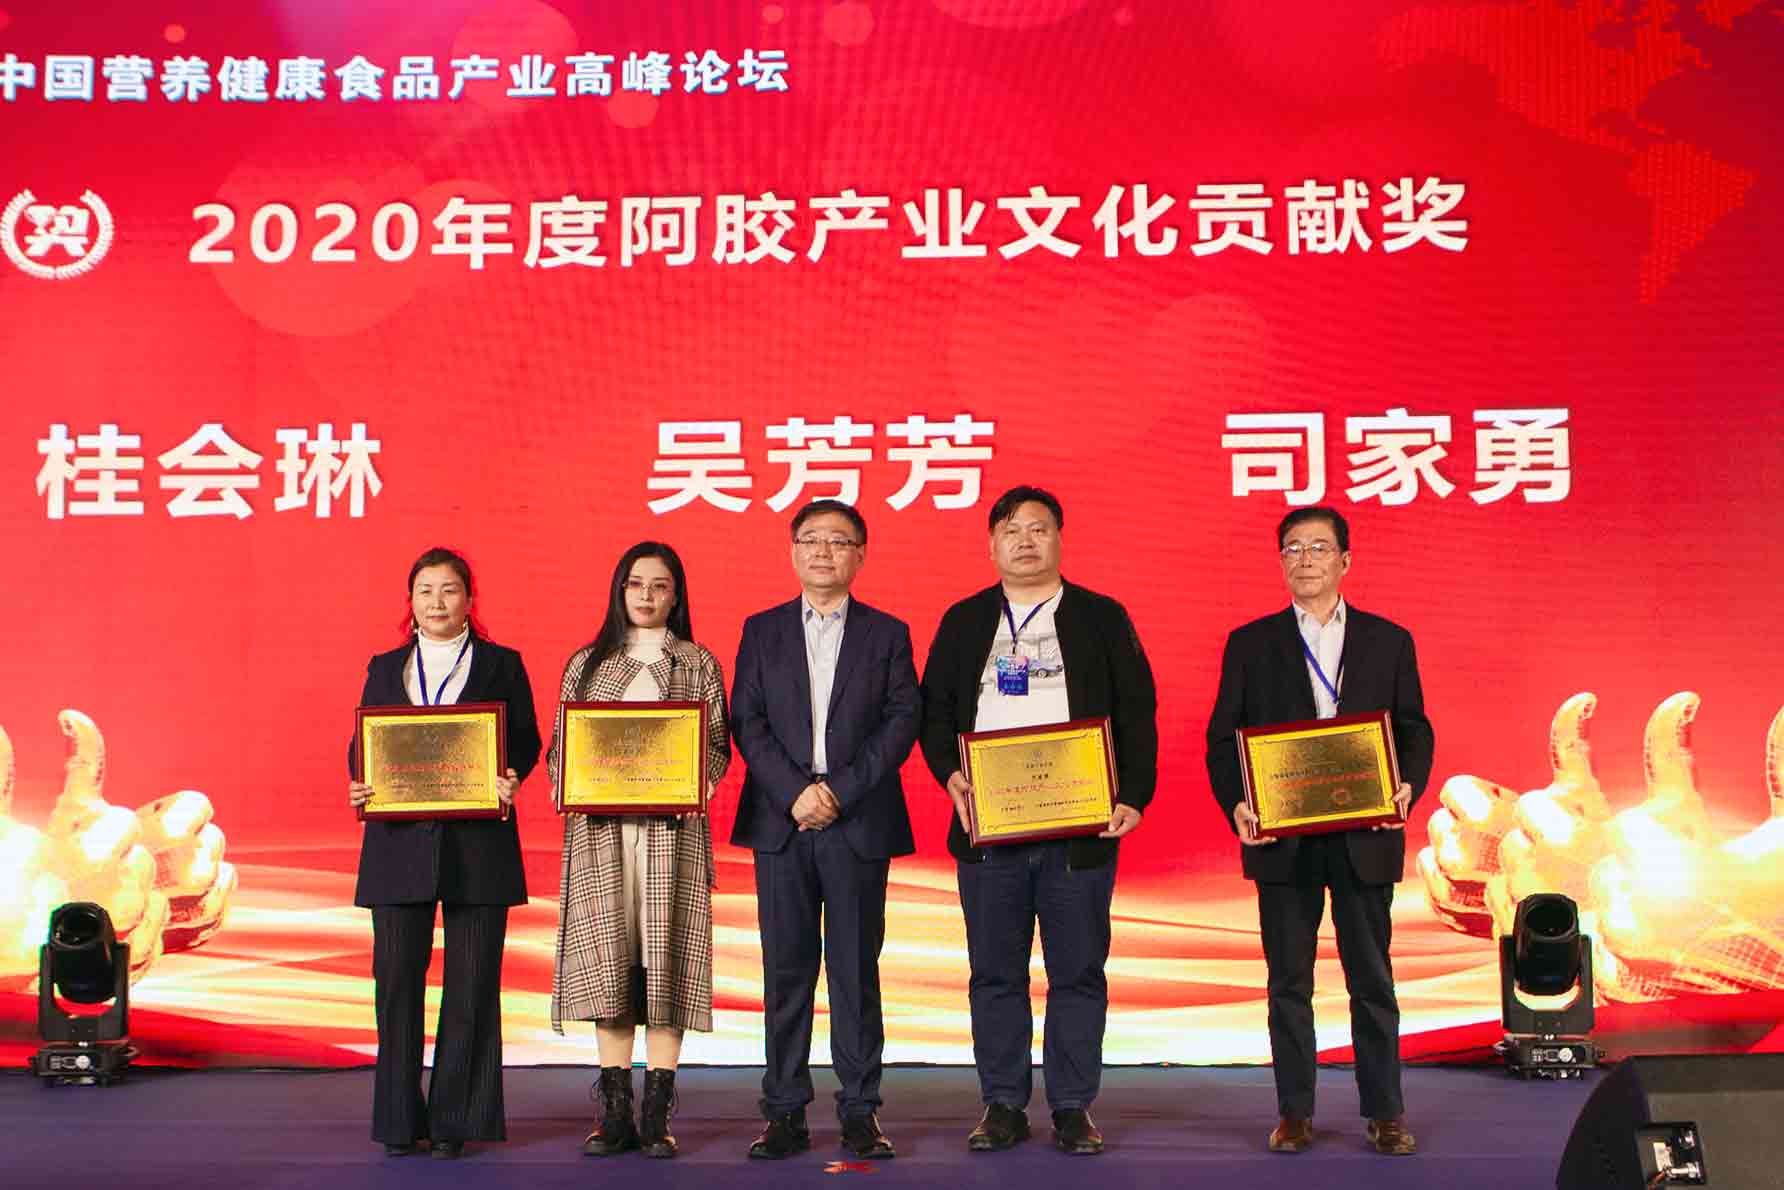 桂会琳、吴芳芳、司家勇获评“2020年度阿胶产业文化贡献奖”